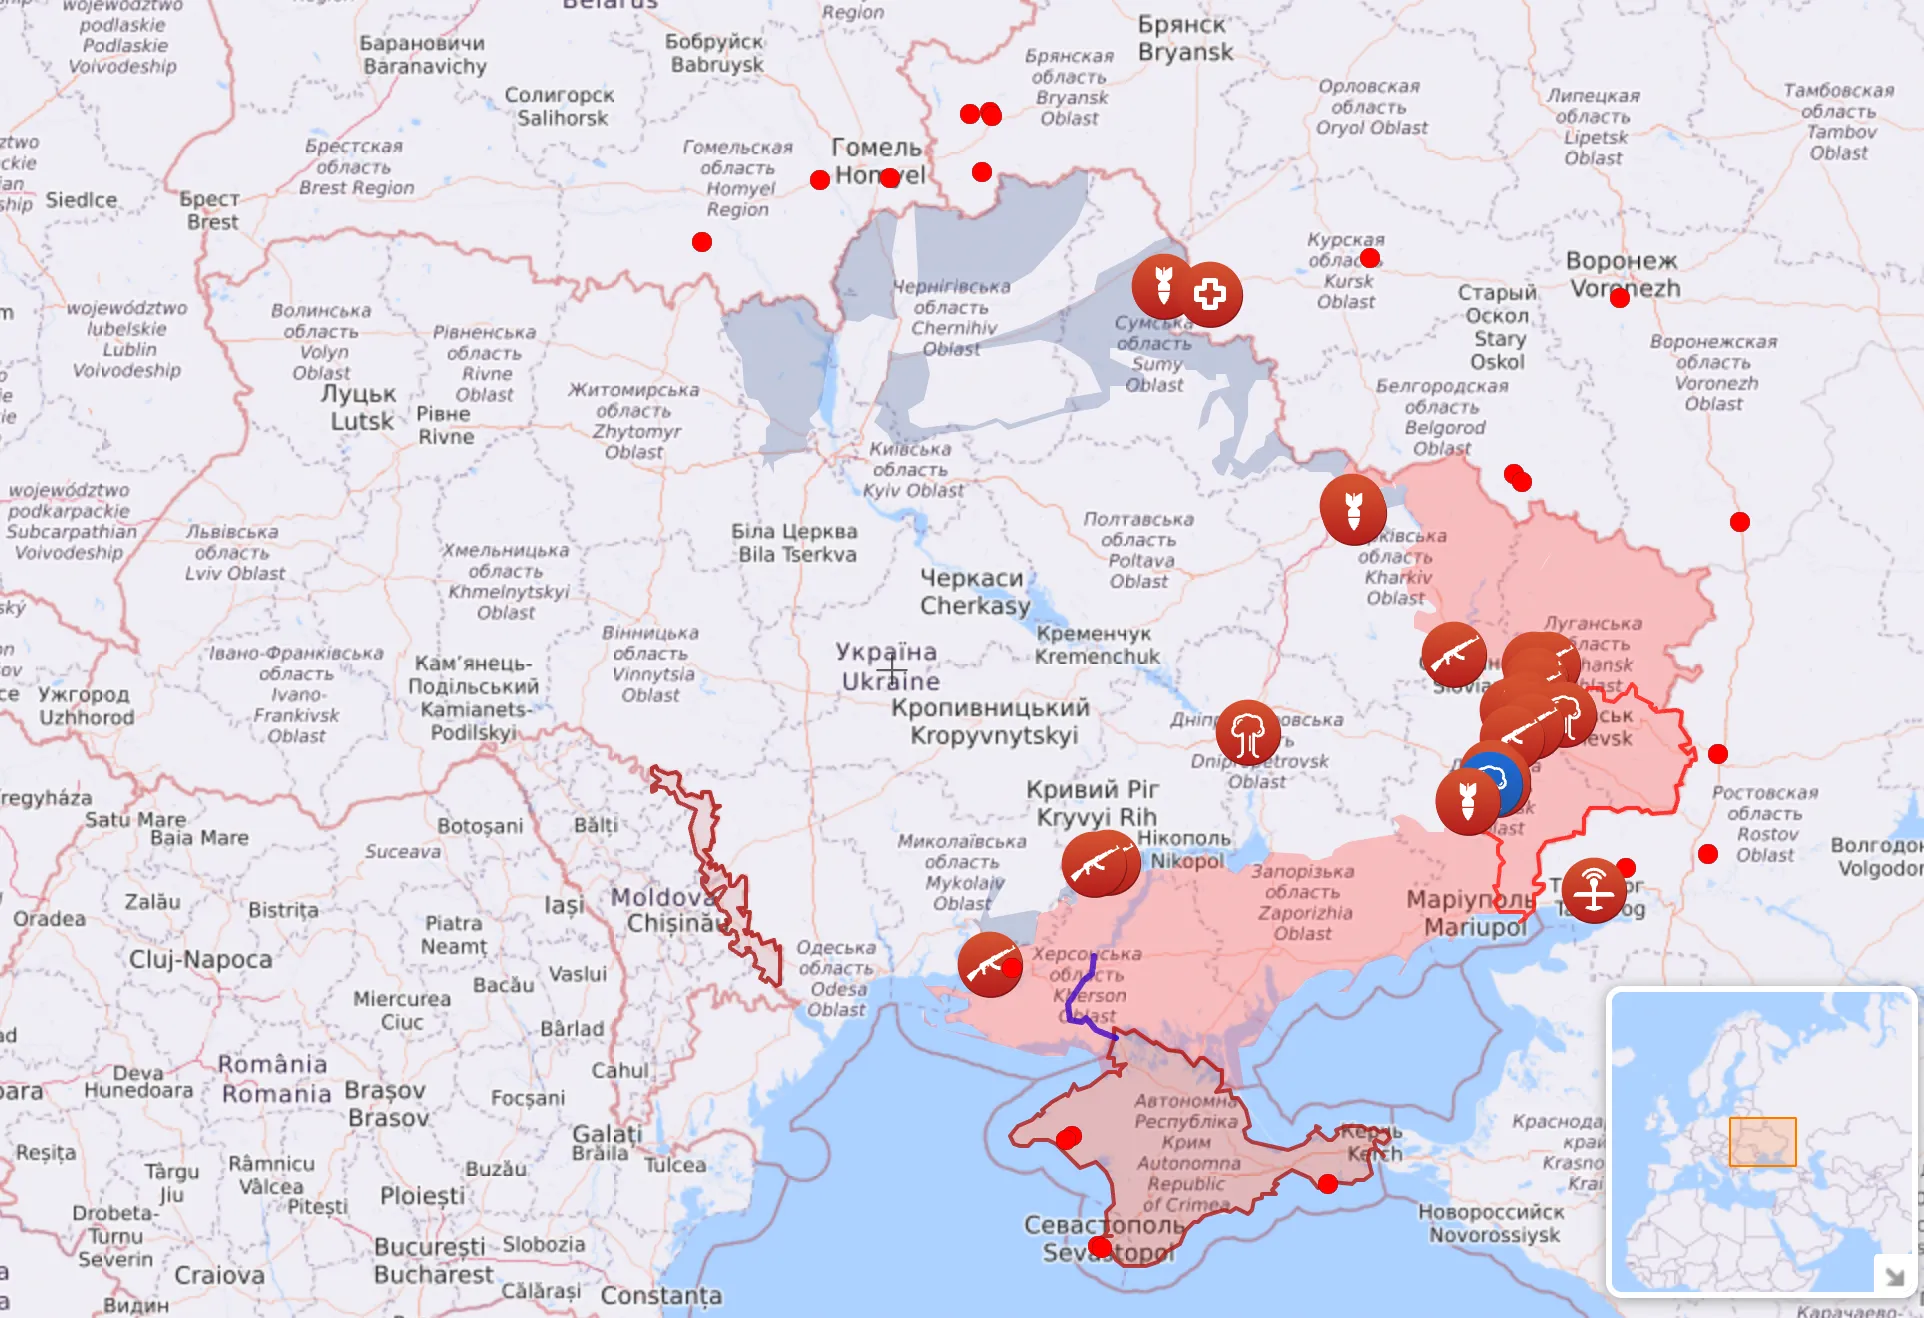 Так выглядит карта боевых действий в Украине по состоянию на 5 июля.